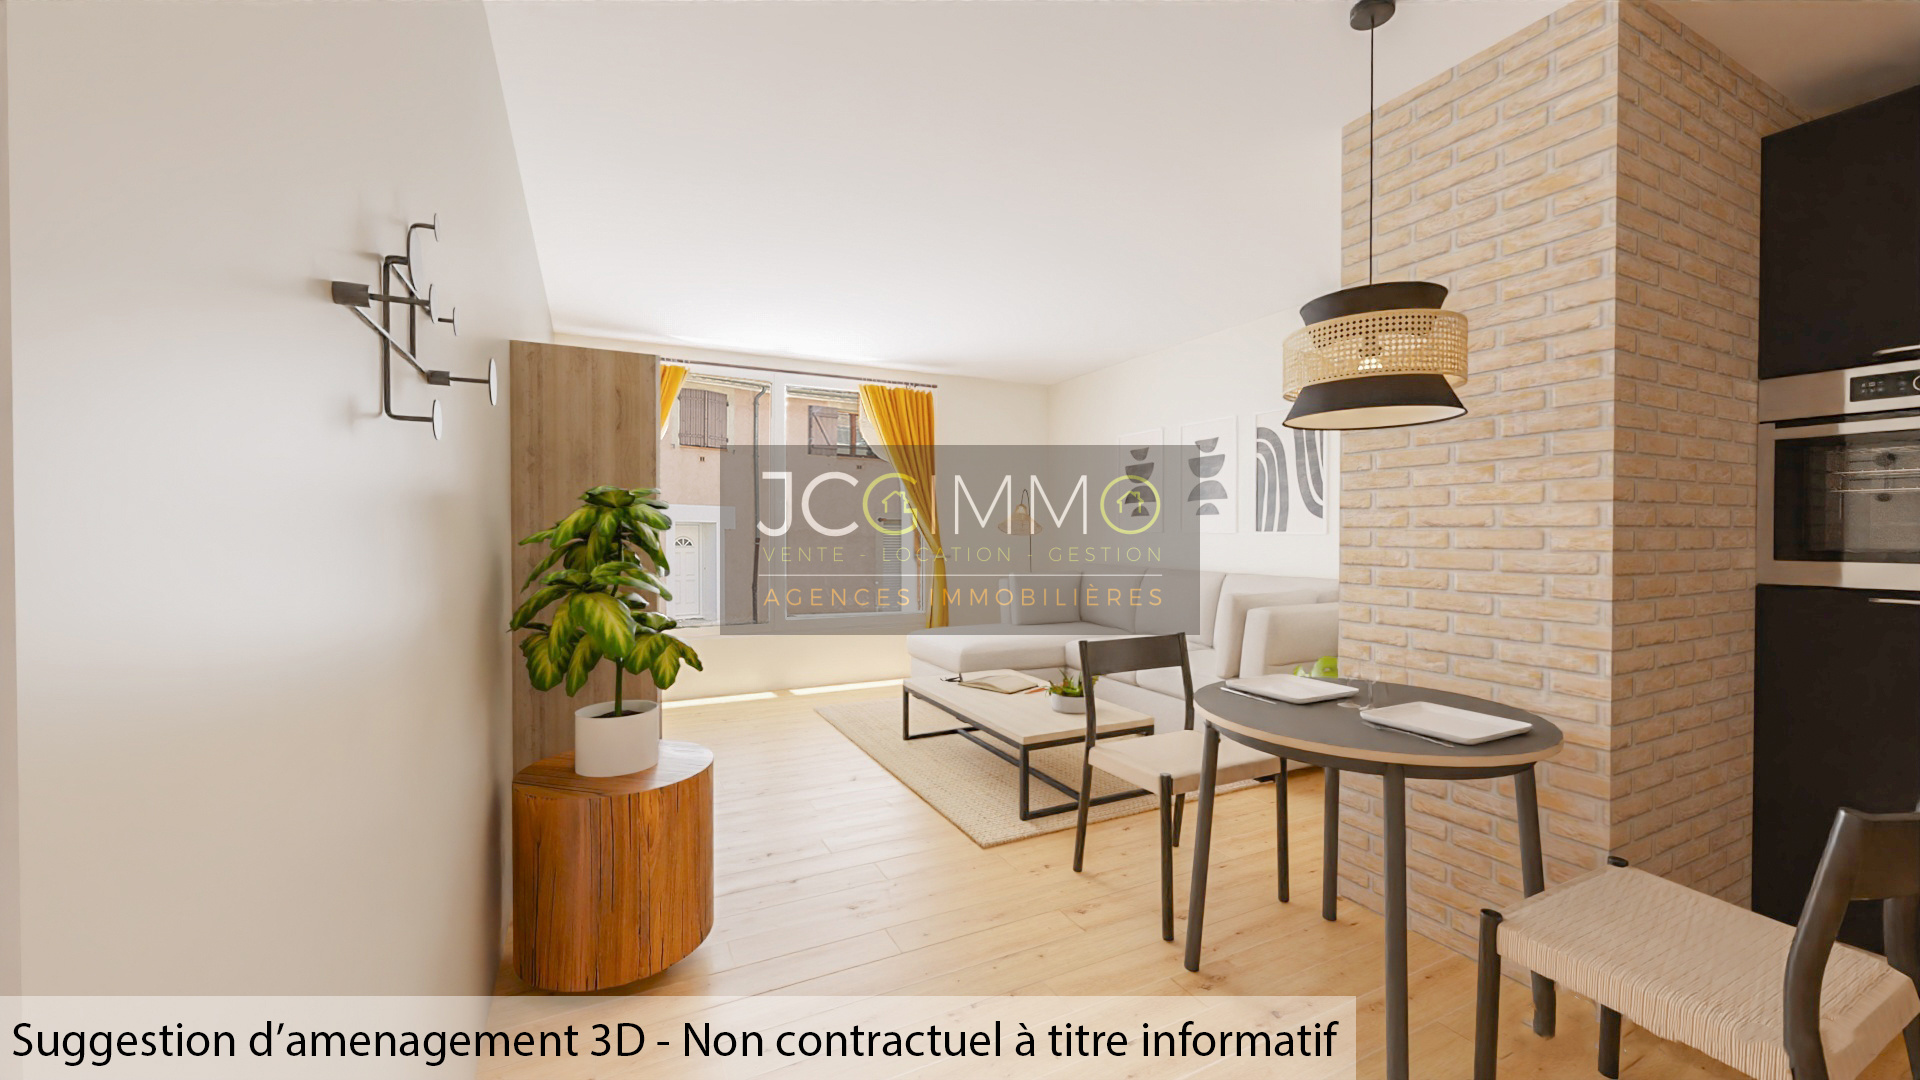 Vente Appartement 52m² 2 Pièces à Puget-Ville (83390) - Jcg Immobilier